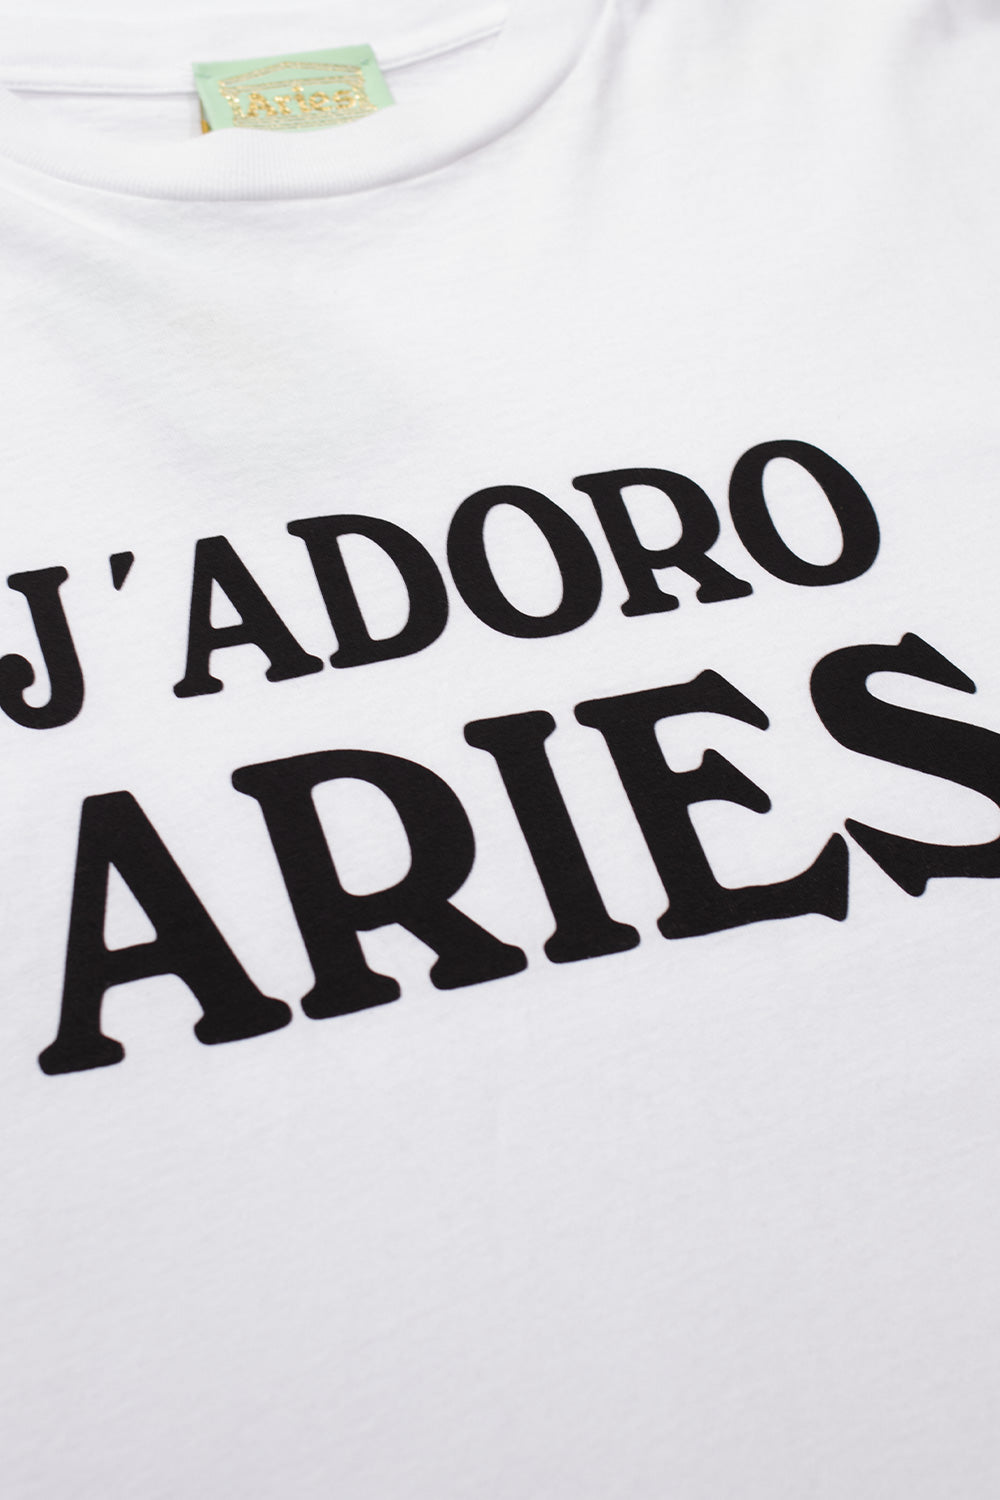 Aries Adoro Aries T-Shirt White - BONKERS